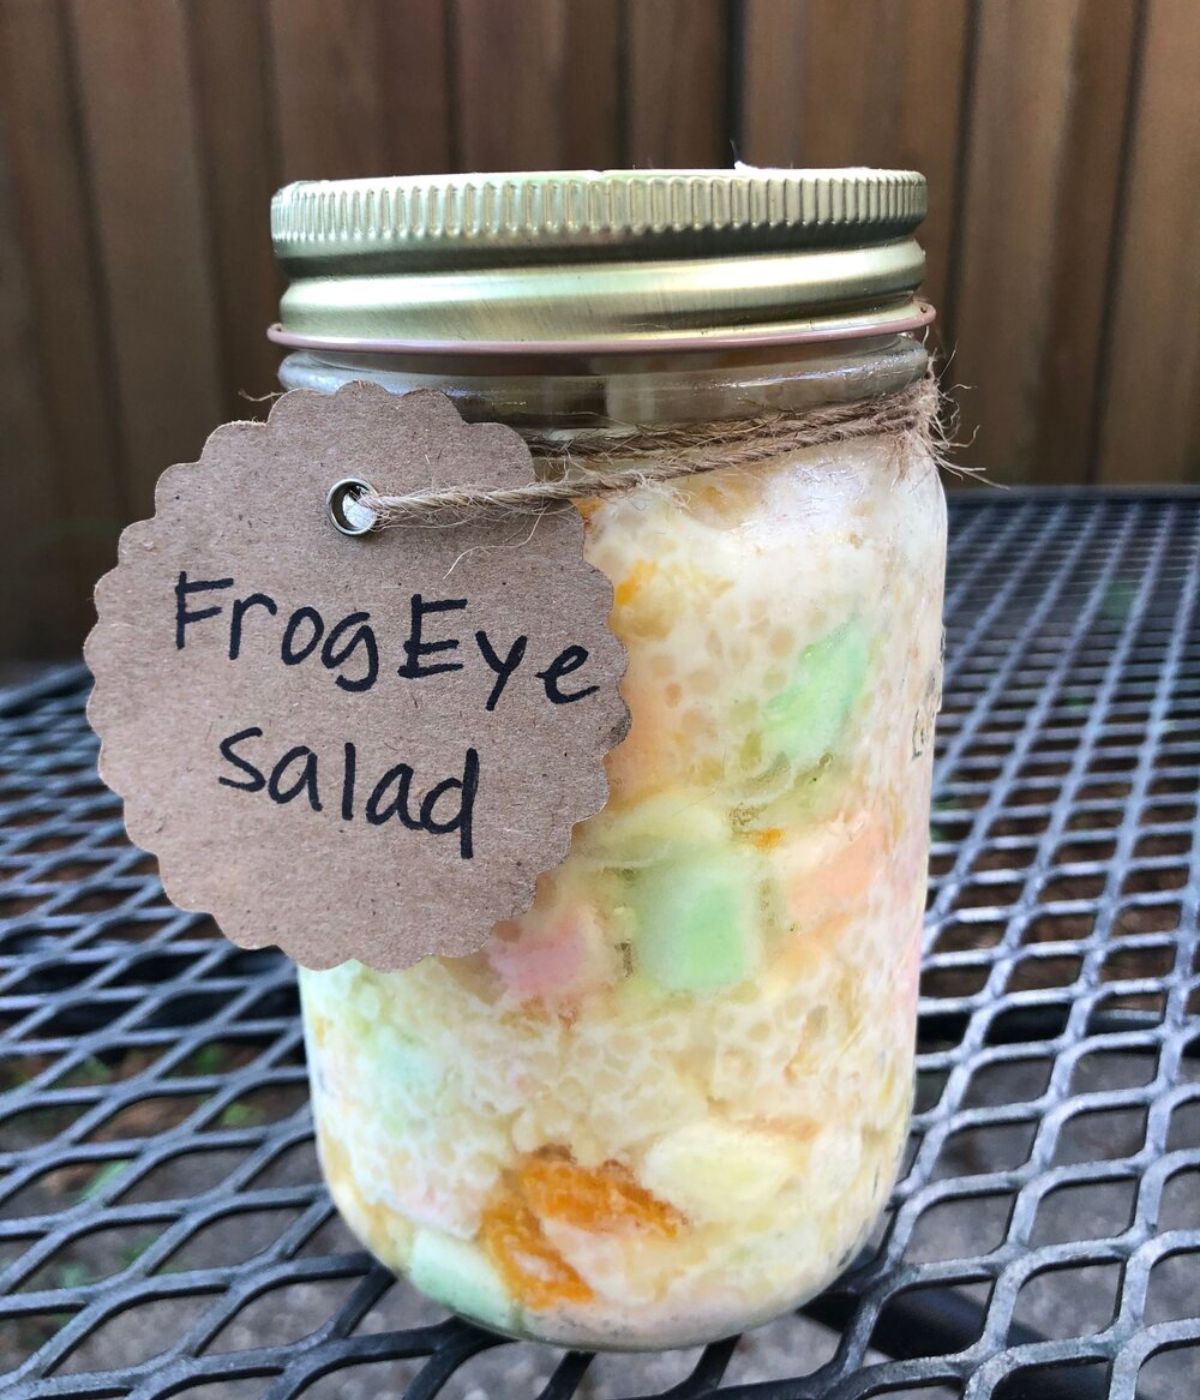 Frog eye salad in a mason jar